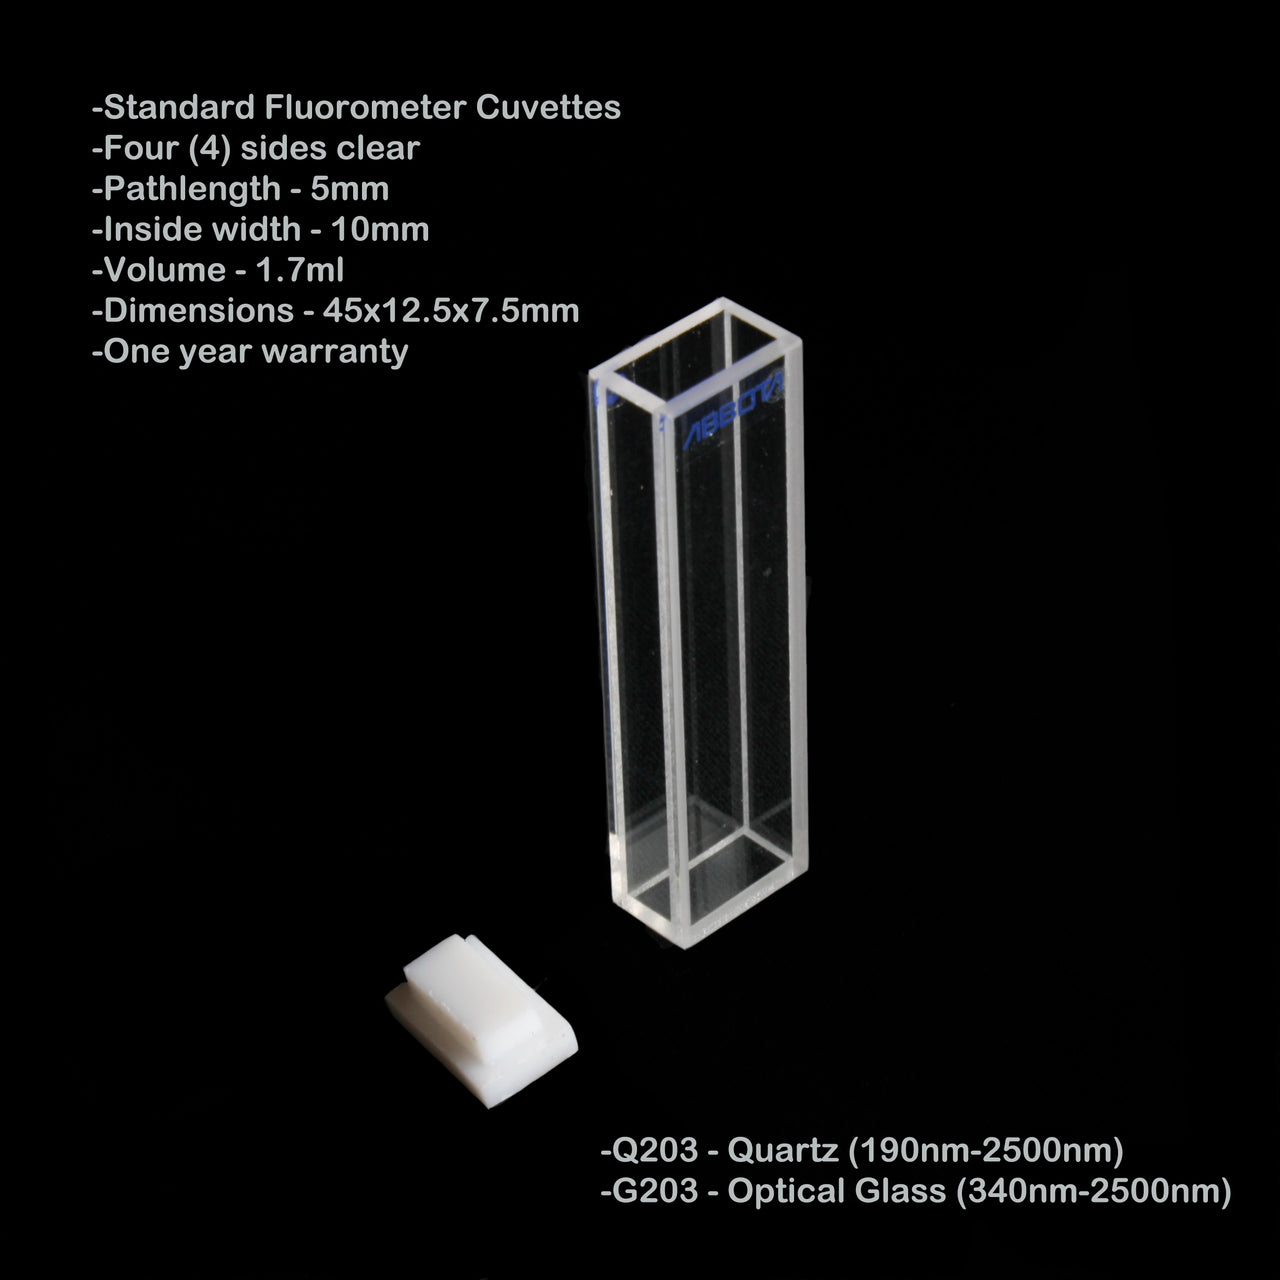 5mm Pathlength Standard Fluorometer Cuvette - 1.7ml